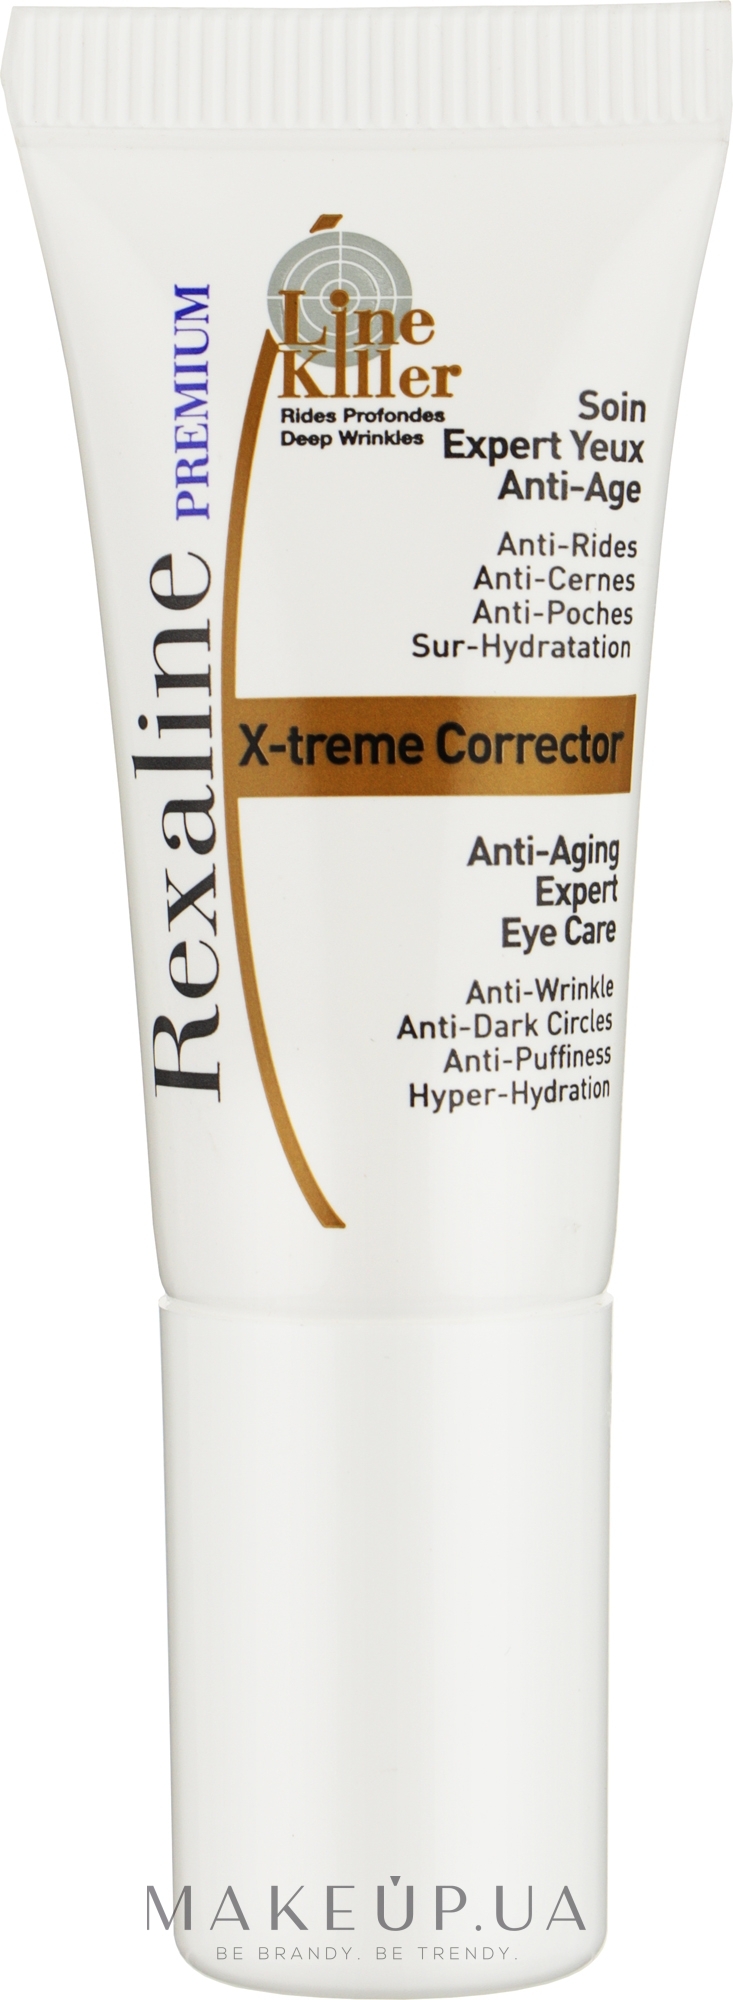 ПОДАРОК! Антивозрастной крем-эксперт для кожи вокруг глаз - Rexaline Line Killer X-Treme Corrector Cream (мини) — фото 5ml